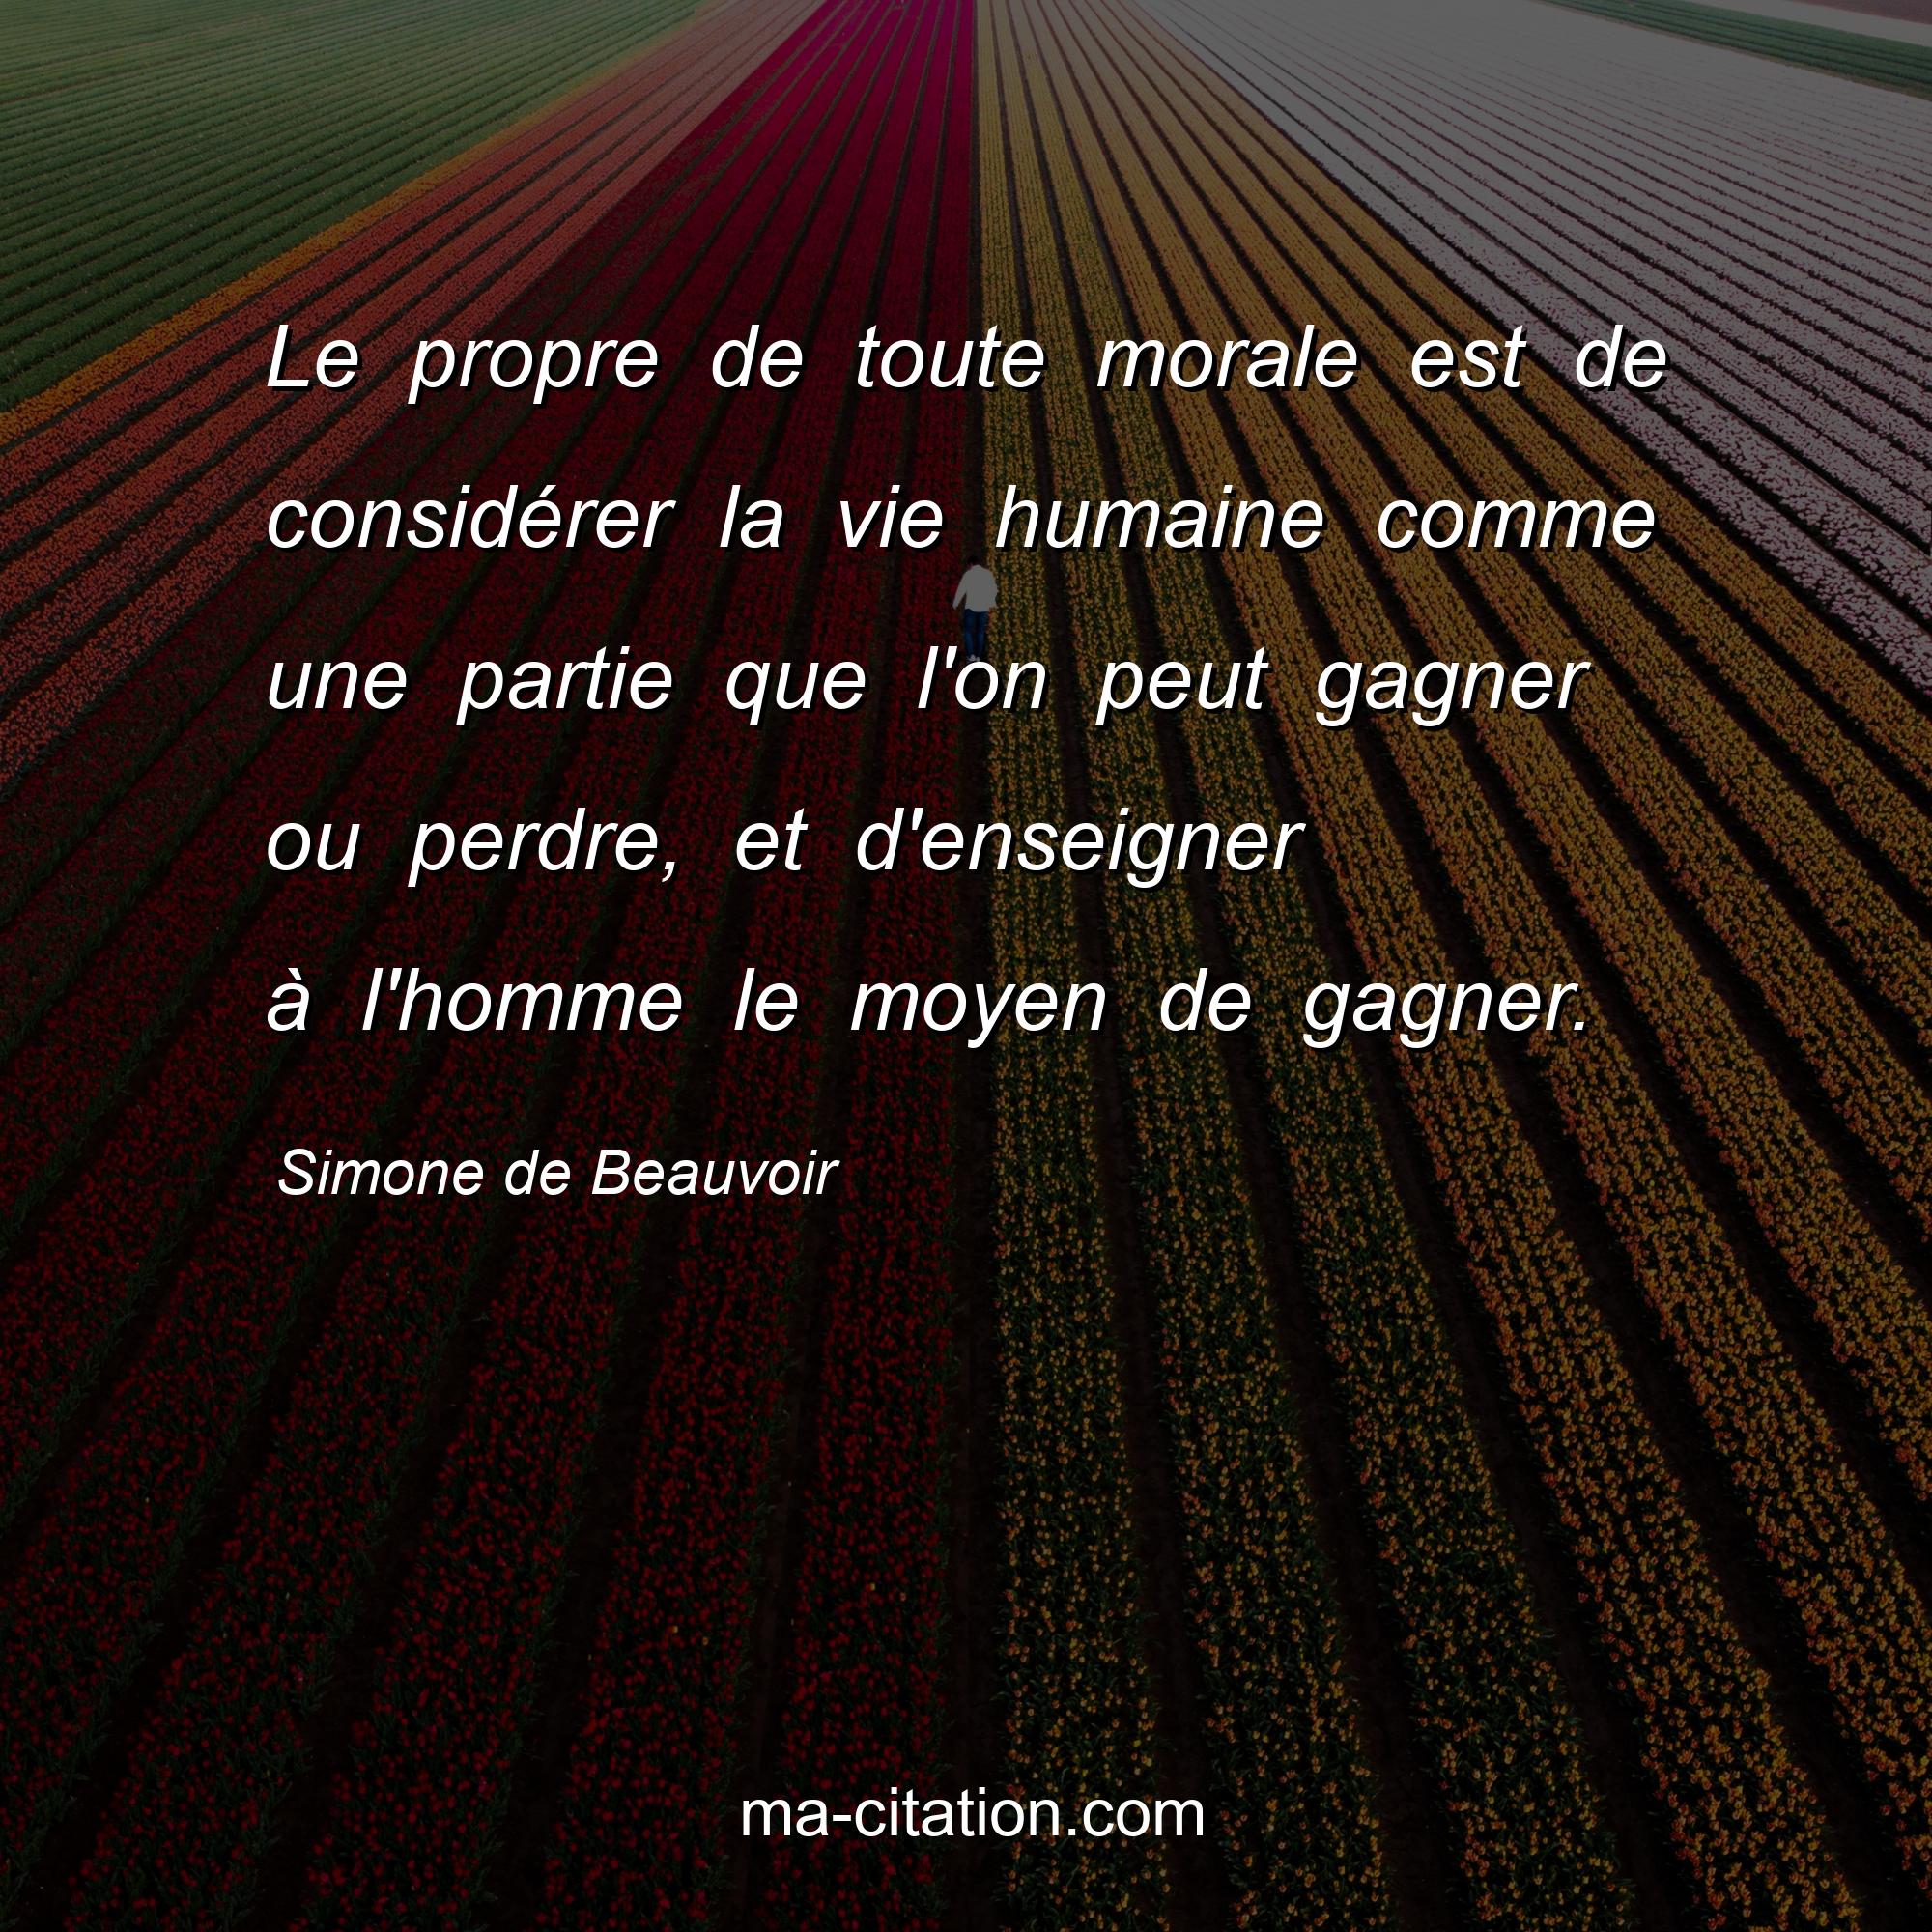 Simone de Beauvoir : Le propre de toute morale est de considérer la vie humaine comme une partie que l'on peut gagner ou perdre, et d'enseigner à l'homme le moyen de gagner.